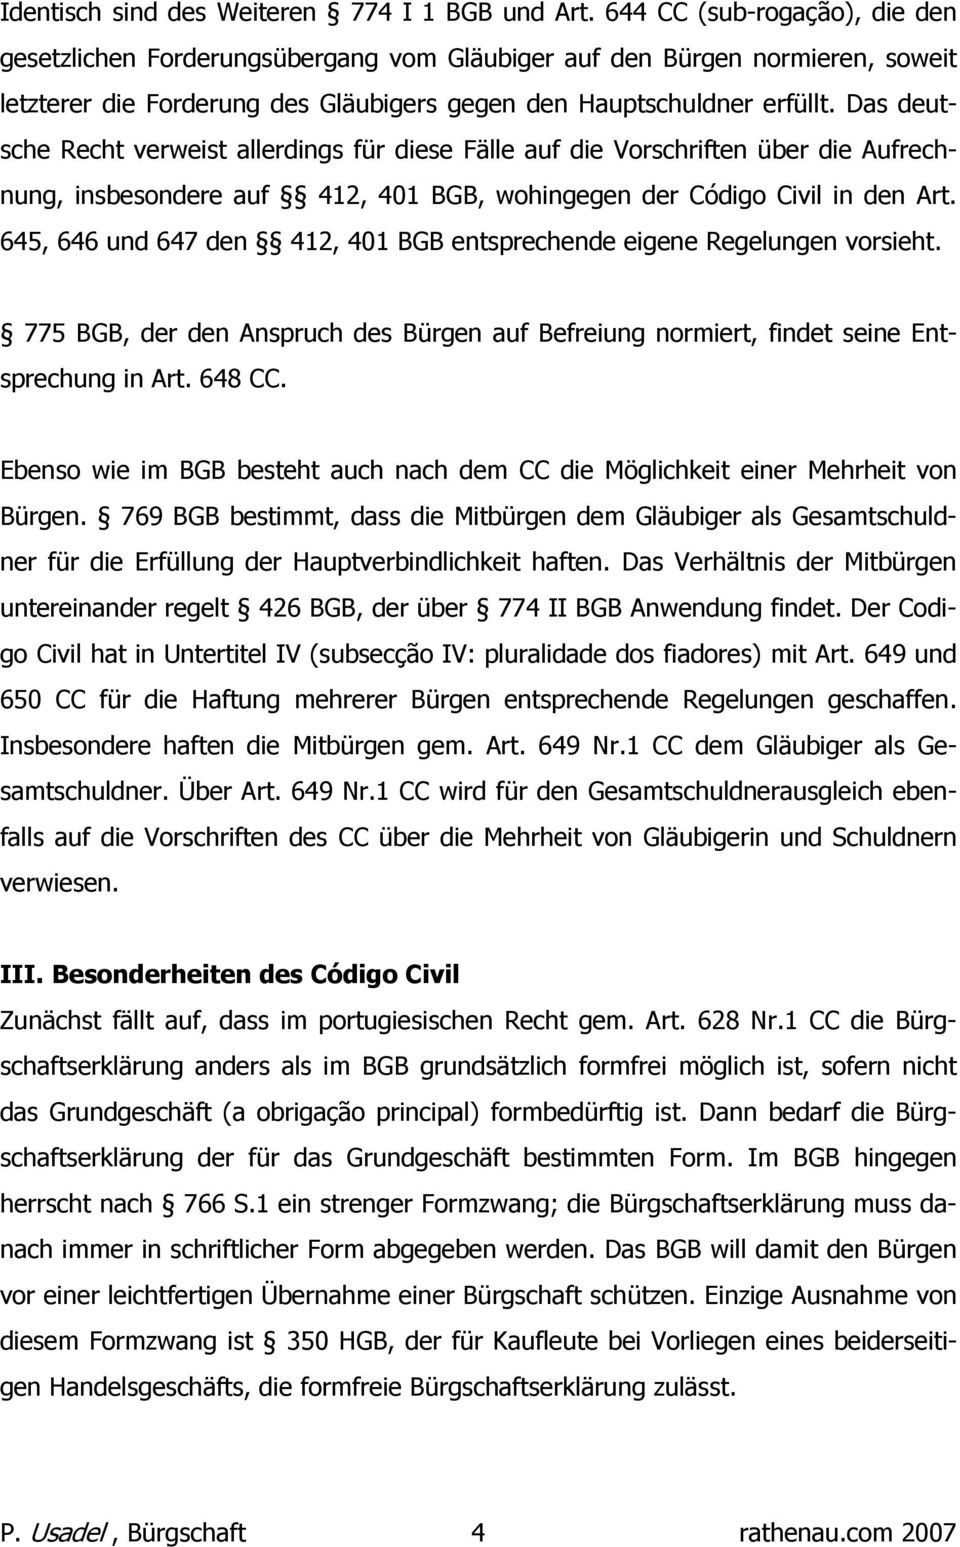 Das deutsche Recht verweist allerdings für diese Fälle auf die Vorschriften über die Aufrechnung, insbesondere auf 412, 401 BGB, wohingegen der Código Civil in den Art.